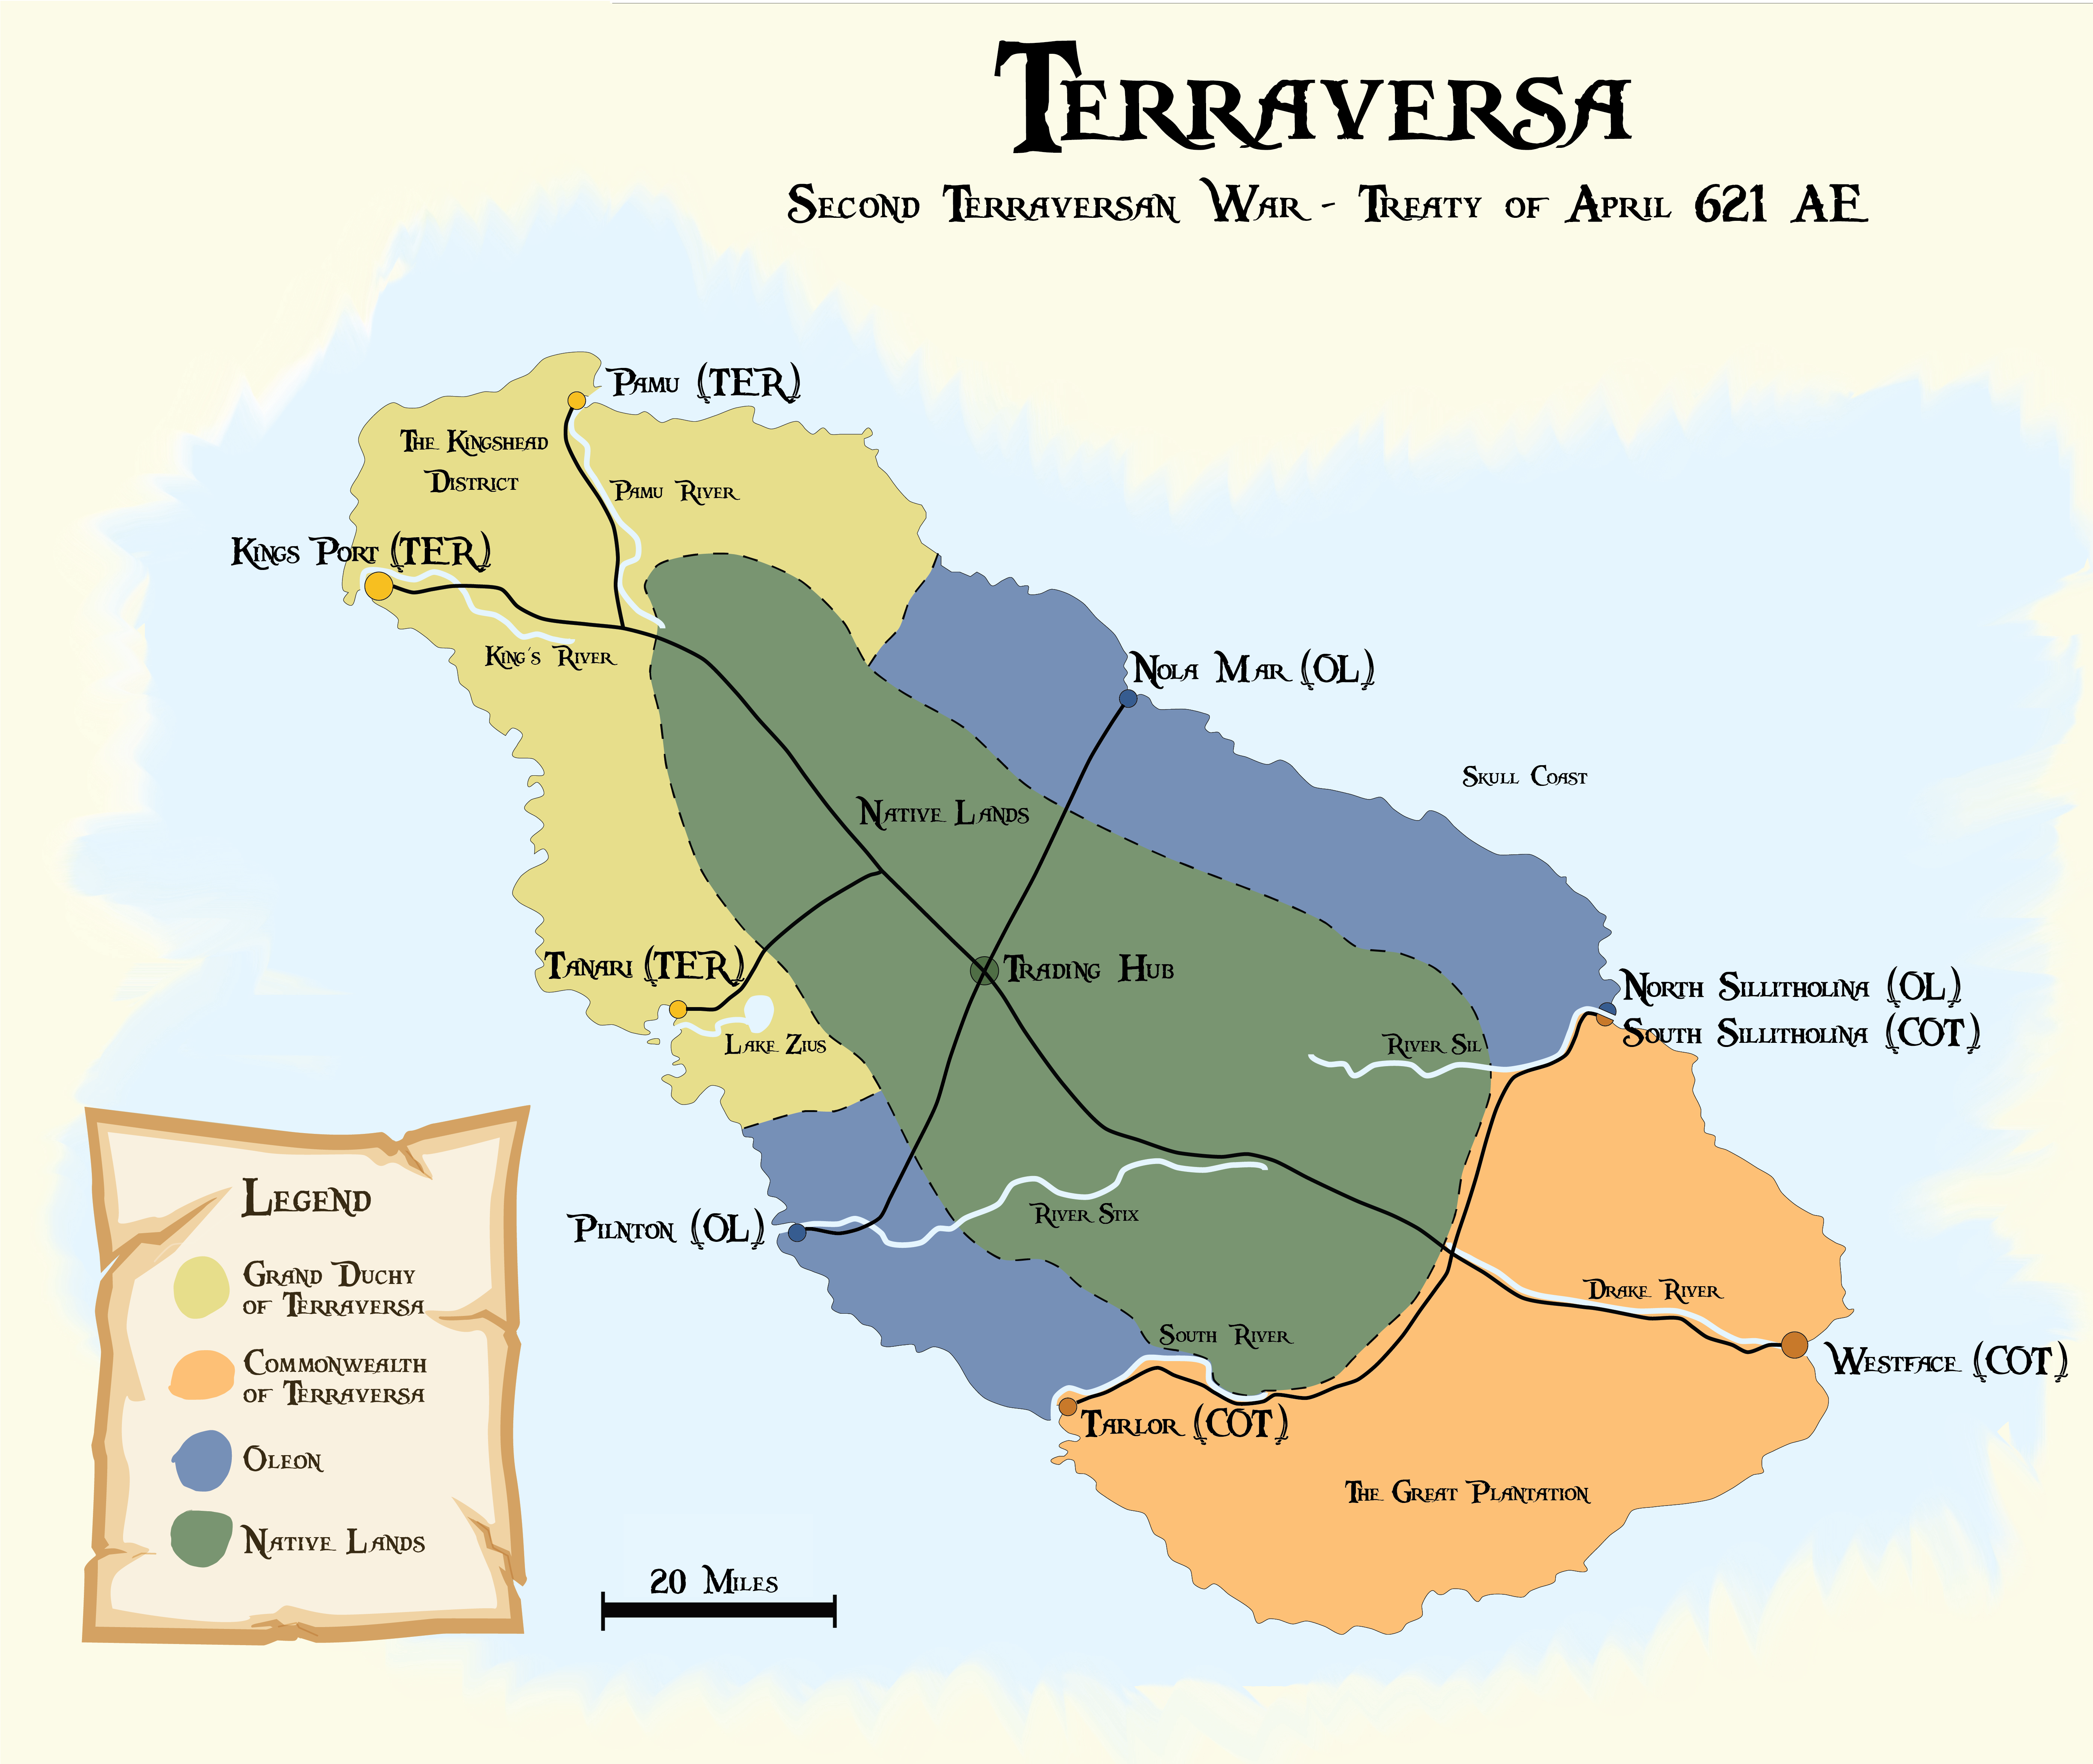 terraversa-map-peace-color.png